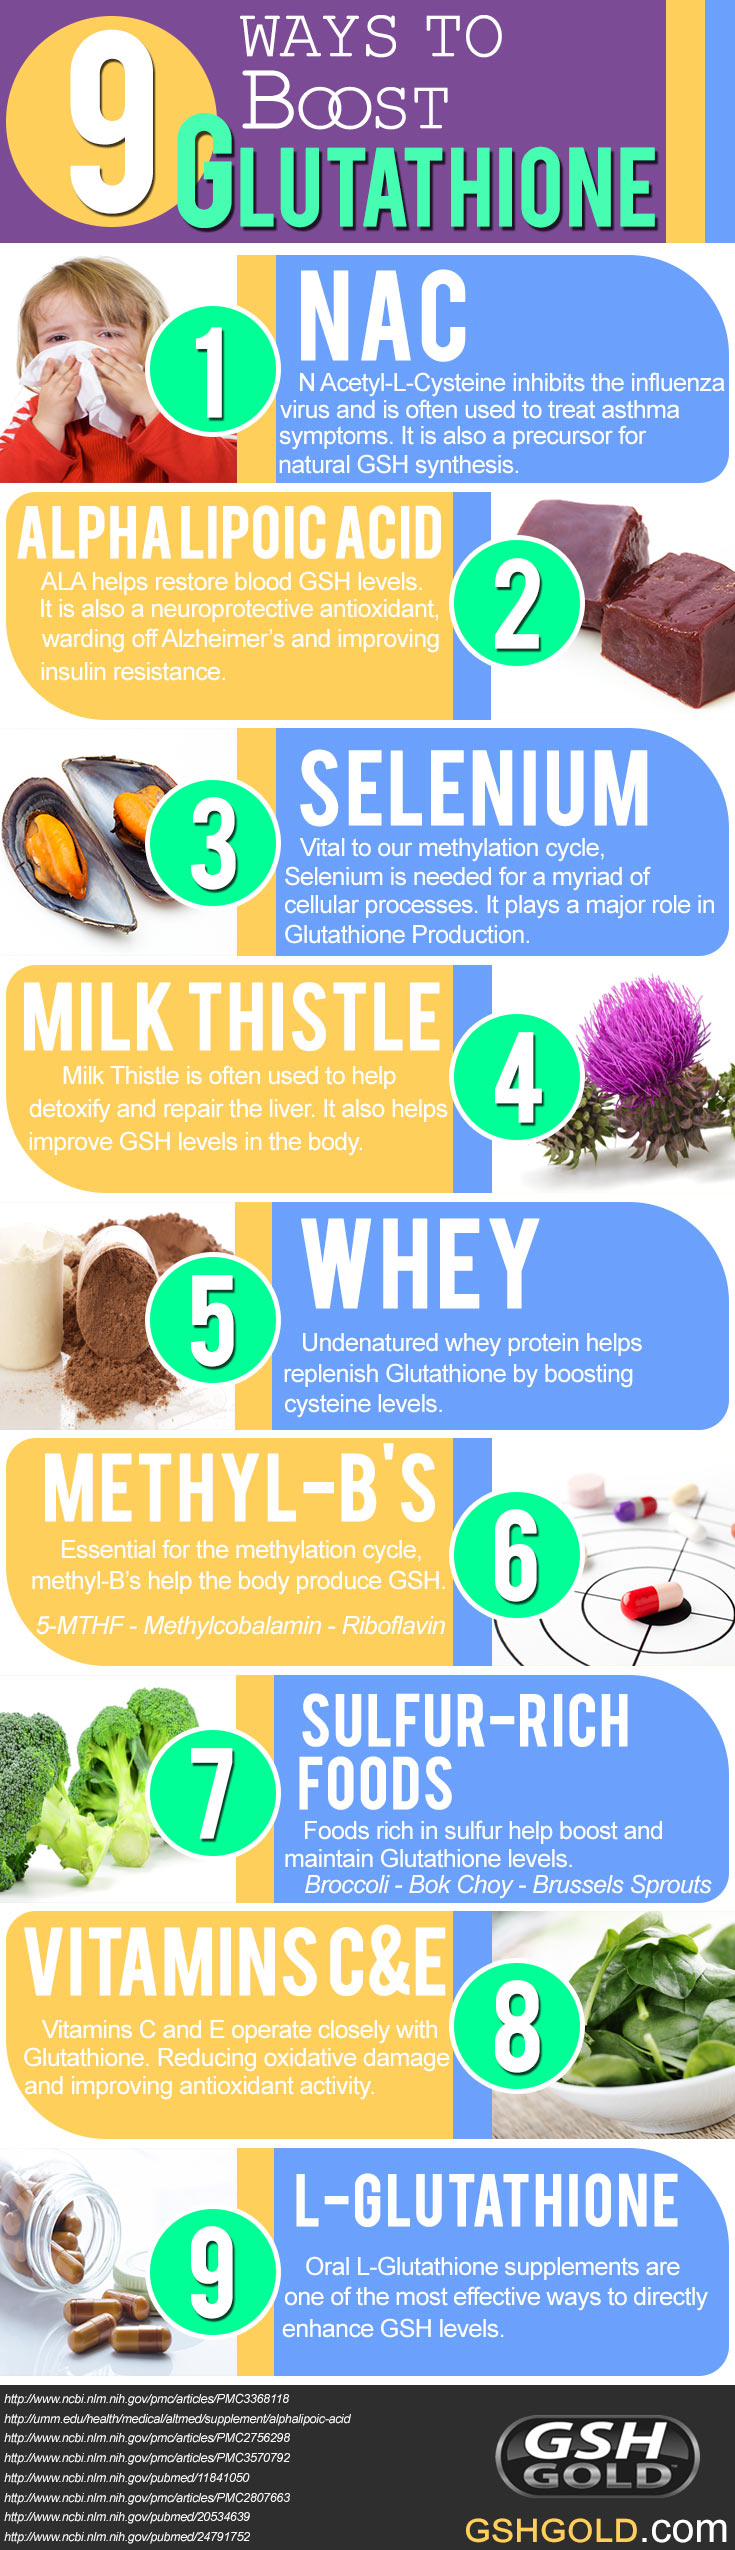 9-Ways-To-Boost-Glutathione-infographic